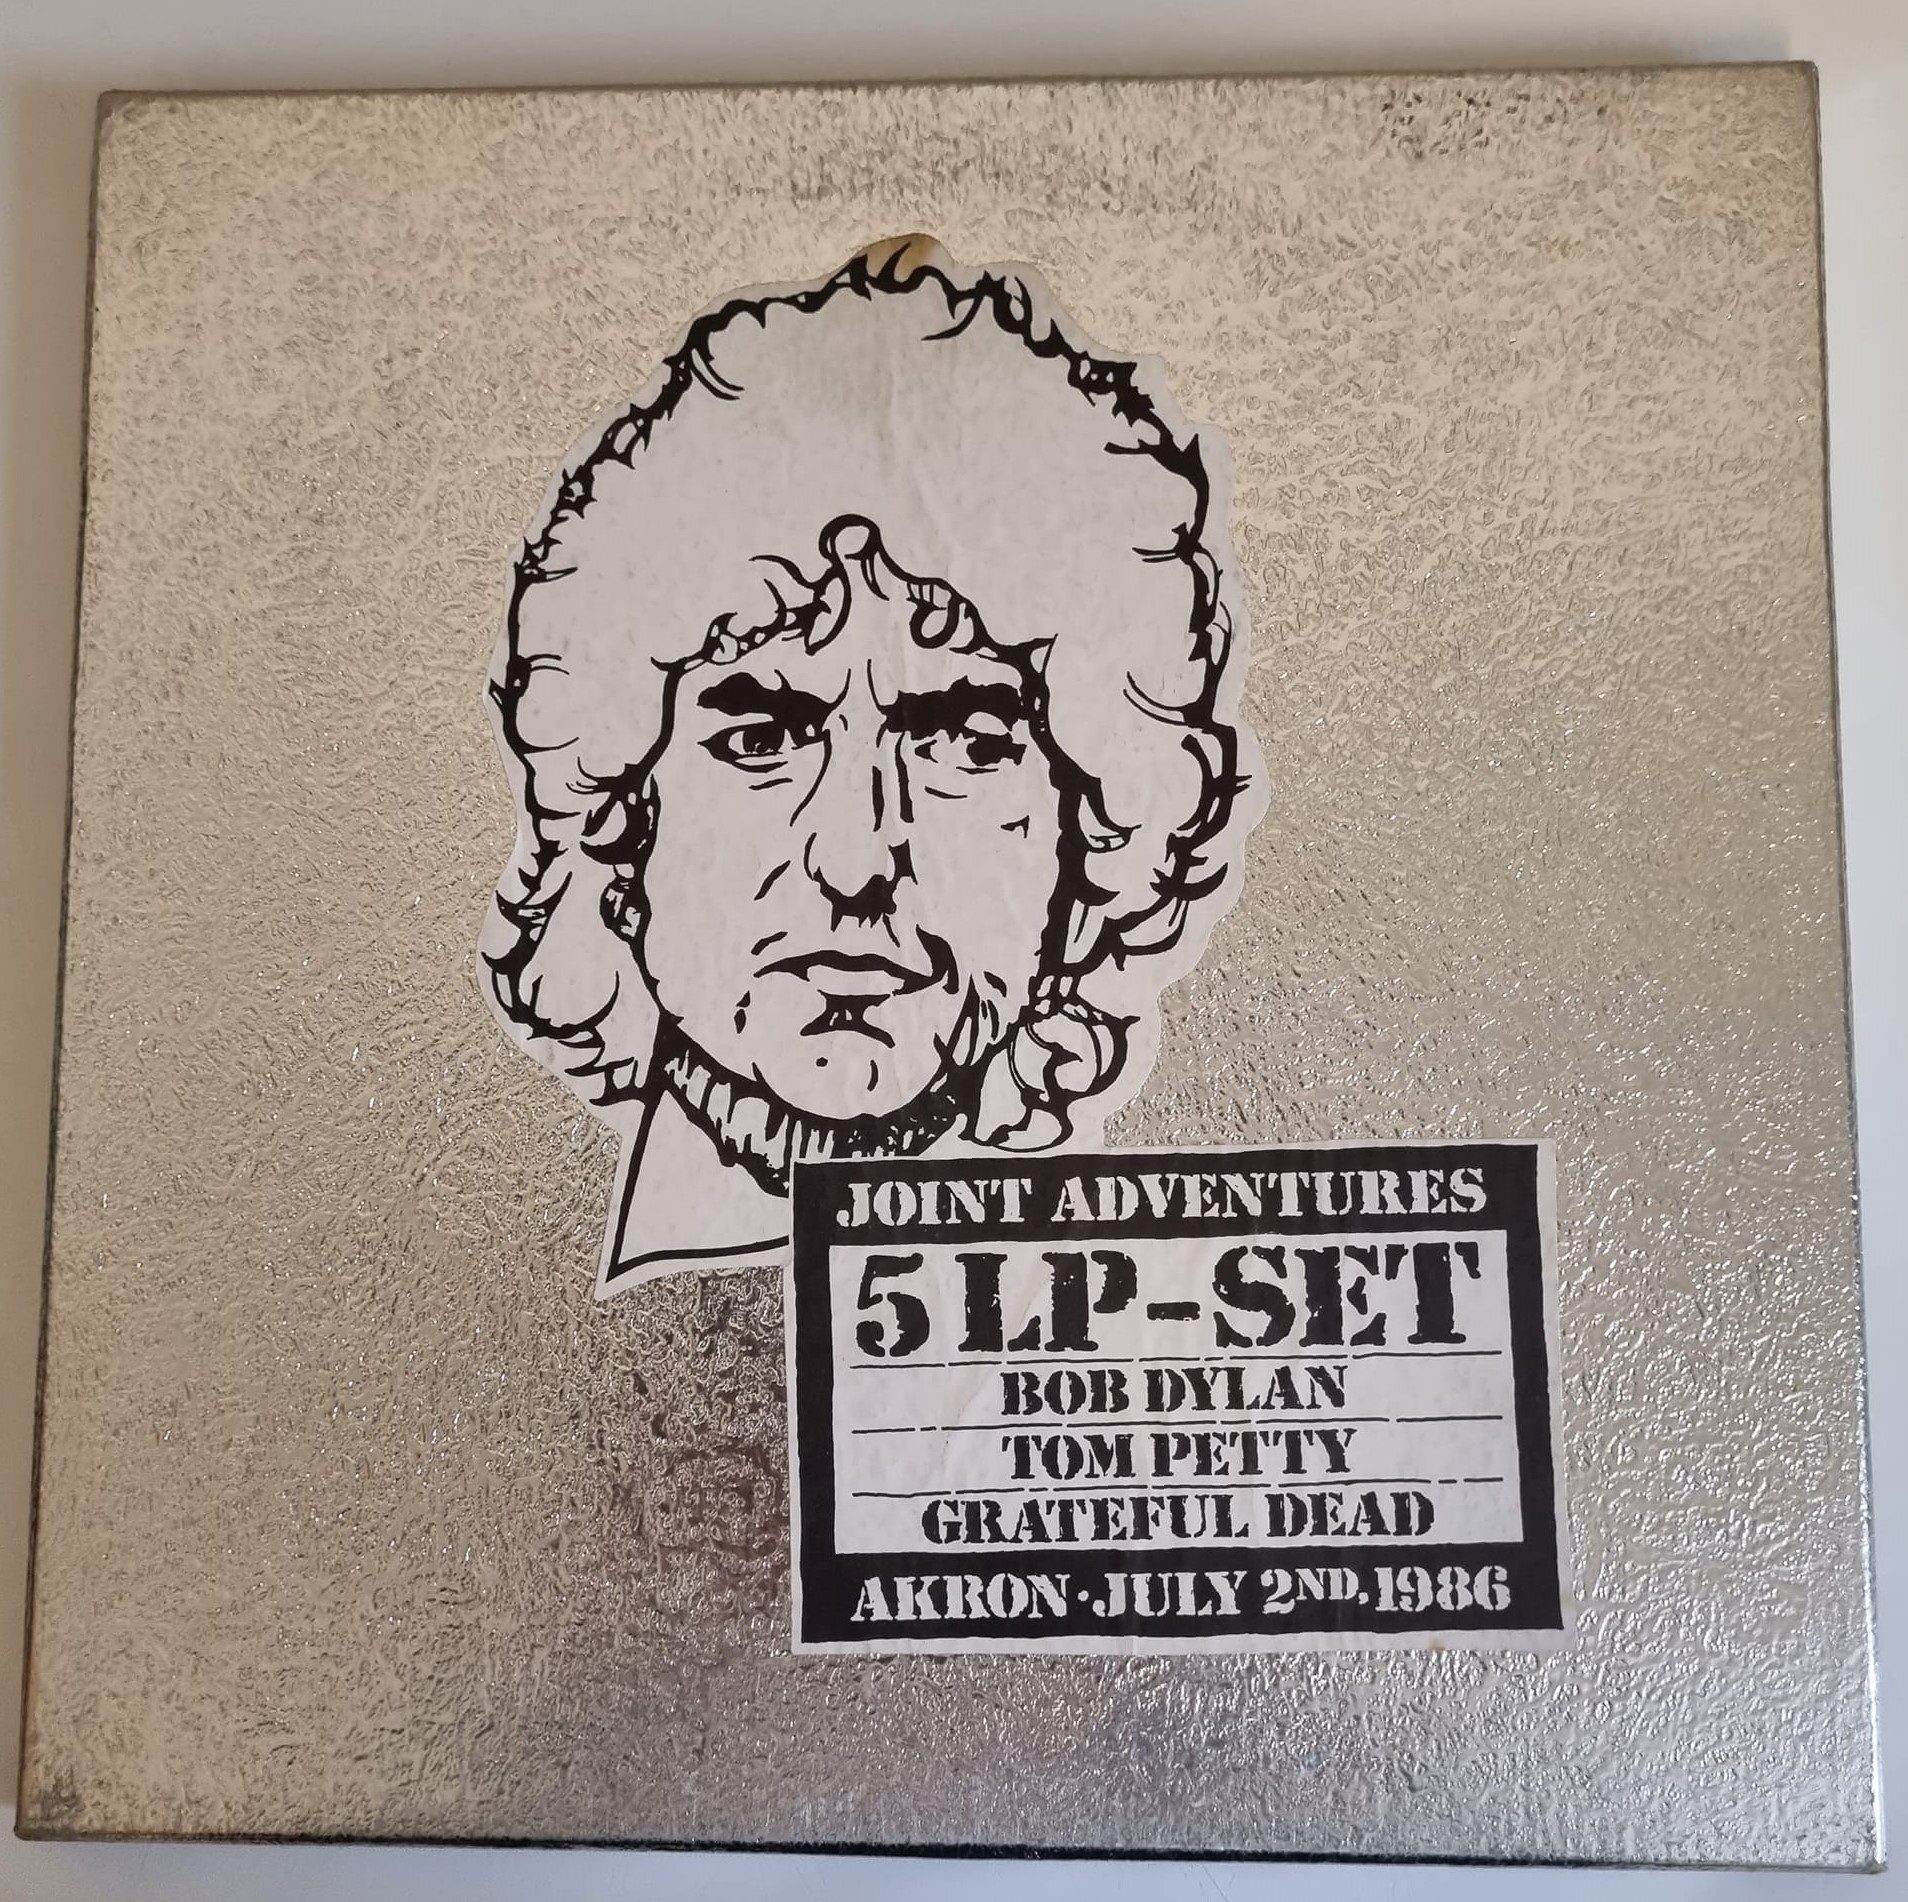 Buy this rare Bob Dylan boxset by clicking here